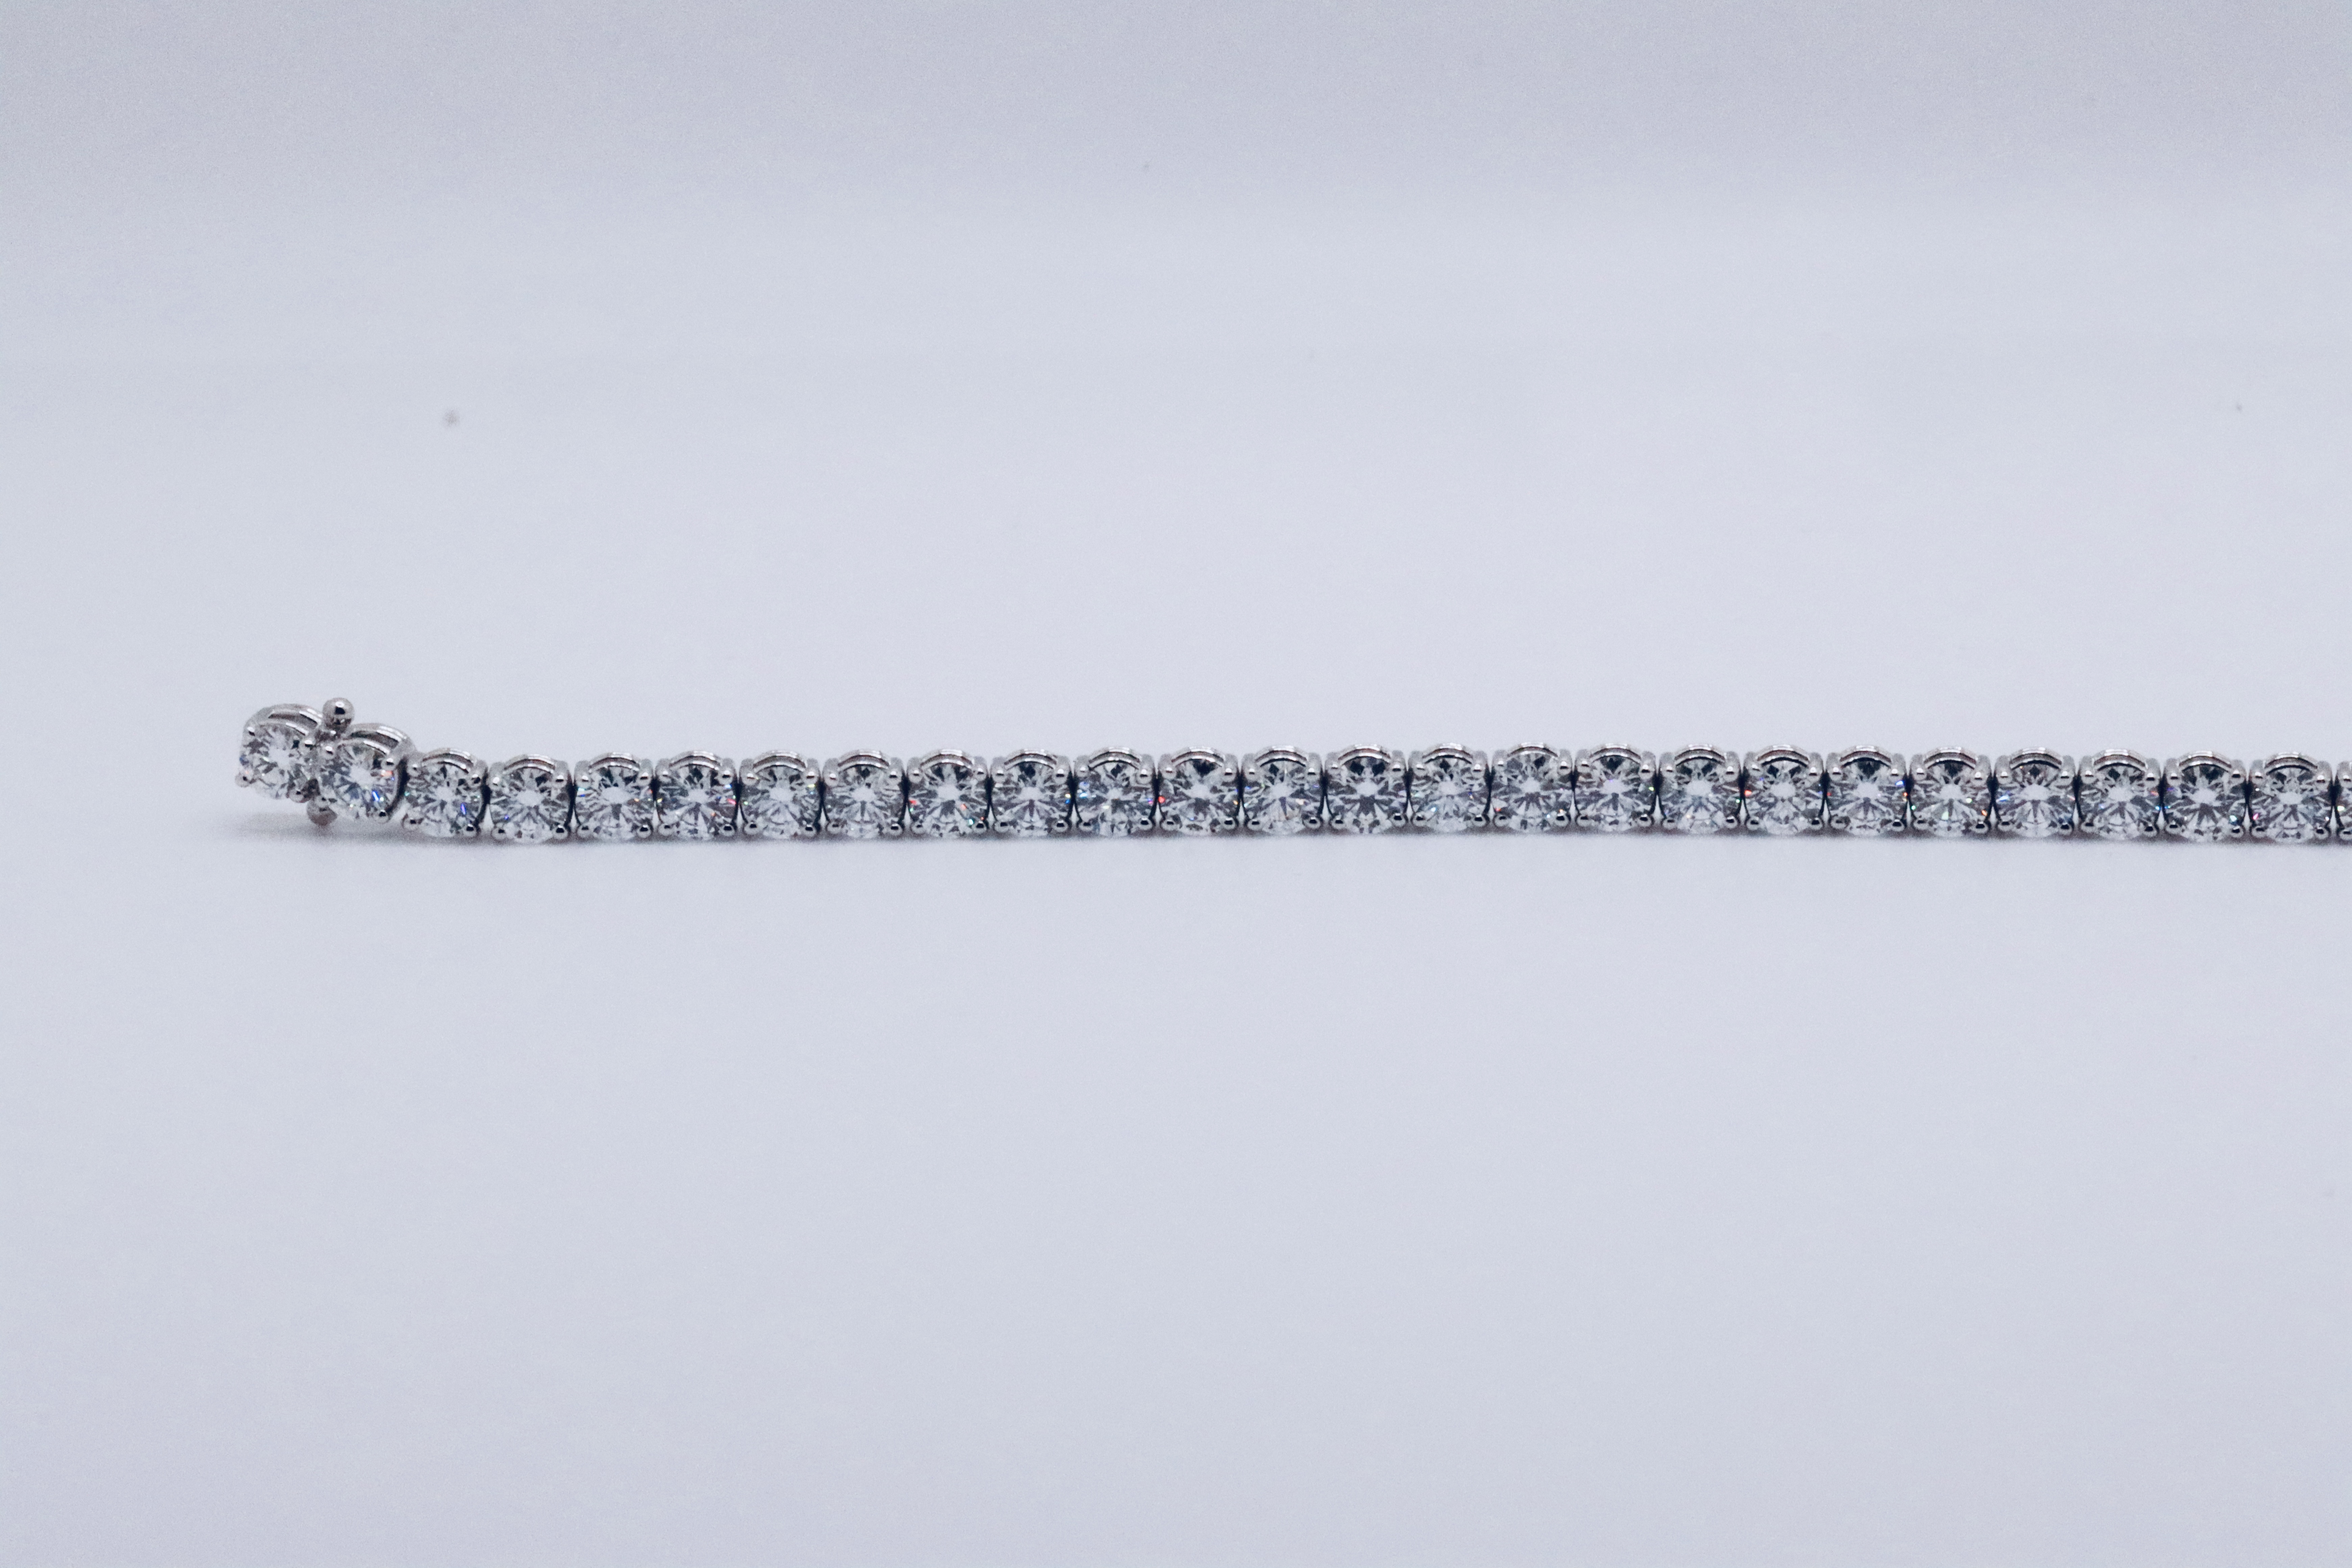 Round Brilliant Cut 14 Carat Diamond Tennis Bracelet D Colour VVS Clarity - 18Kt White Gold - IGI - Image 19 of 31